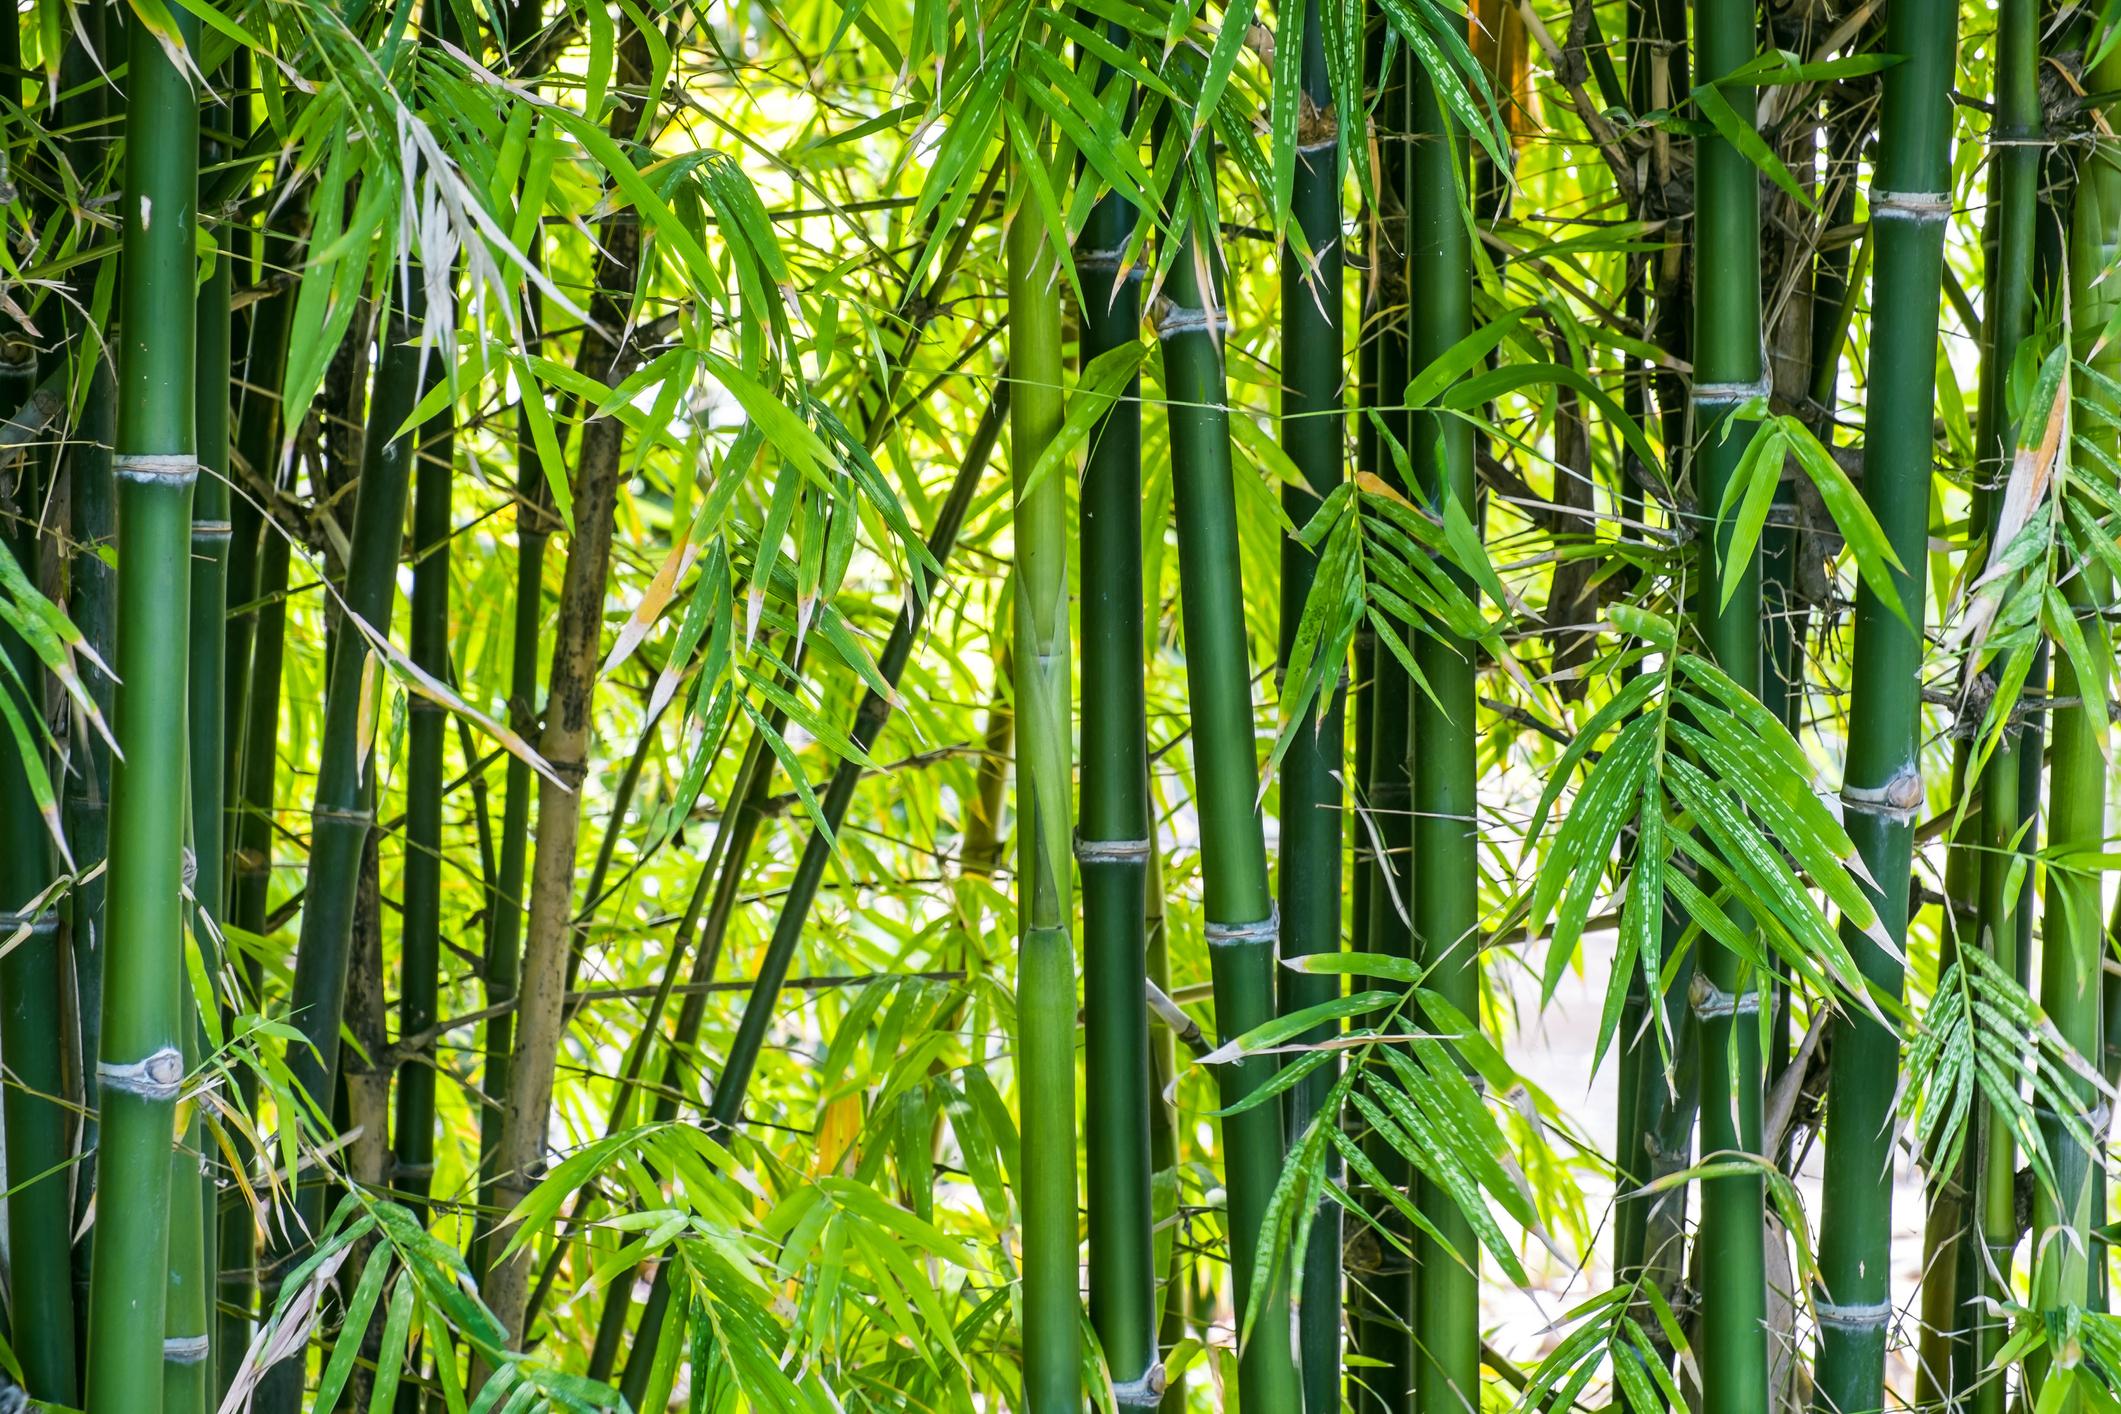  Grazile Bambusse die auch im schweizer Klima gedeihen